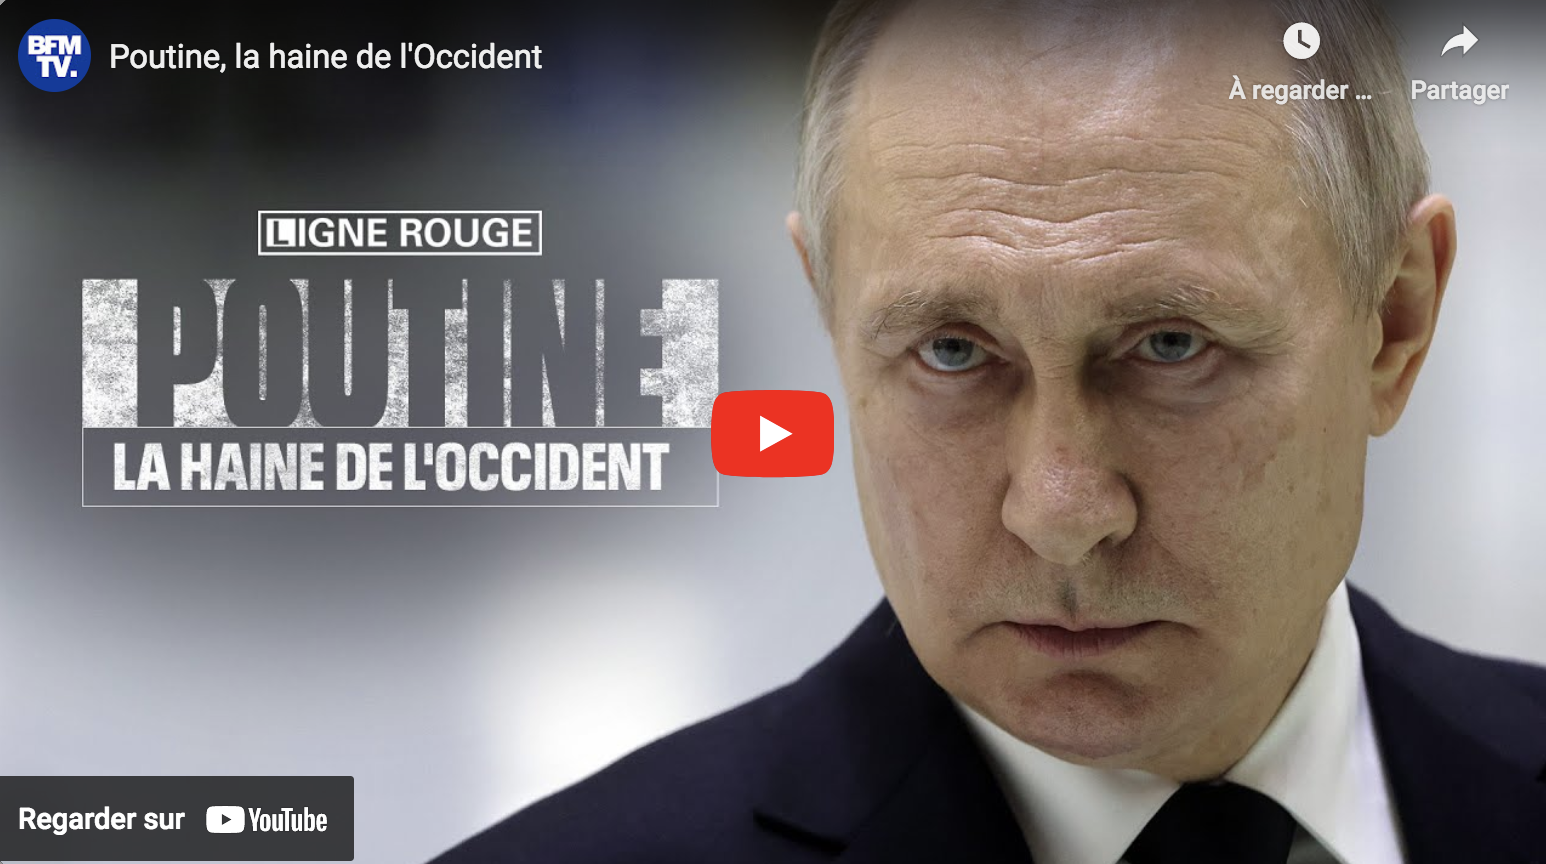 “Poutine, la haine de l’Occident” (BFMTV)